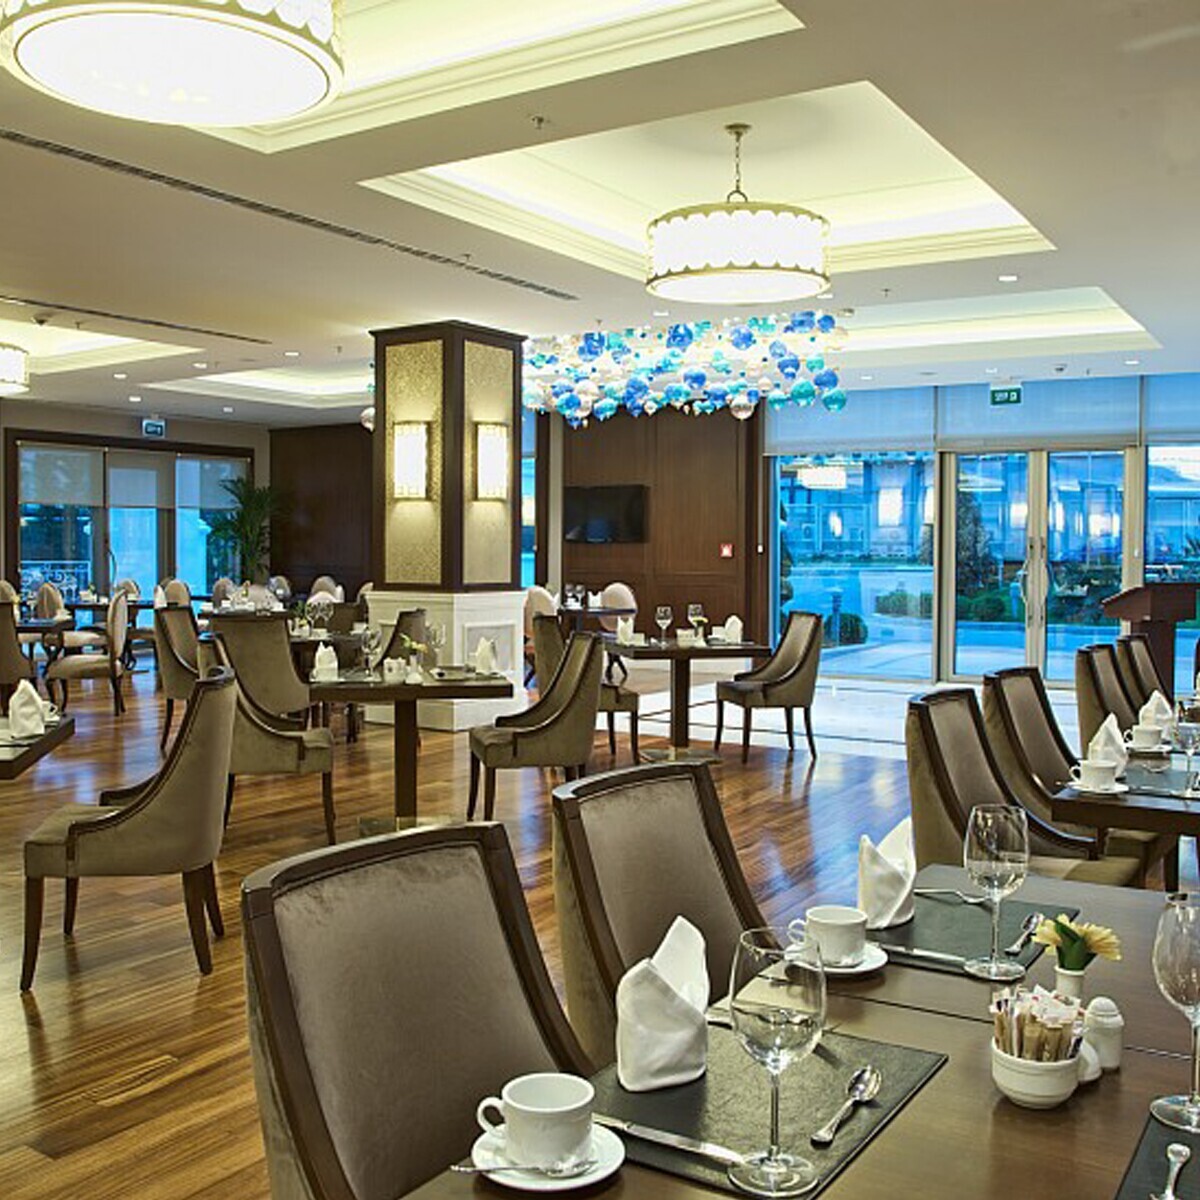 5 Yıldızlı Güneşli Rotta Hotel İstanbul’da SPA Kullanımı Dahil 2 Kişilik Konaklama Seçenekleri